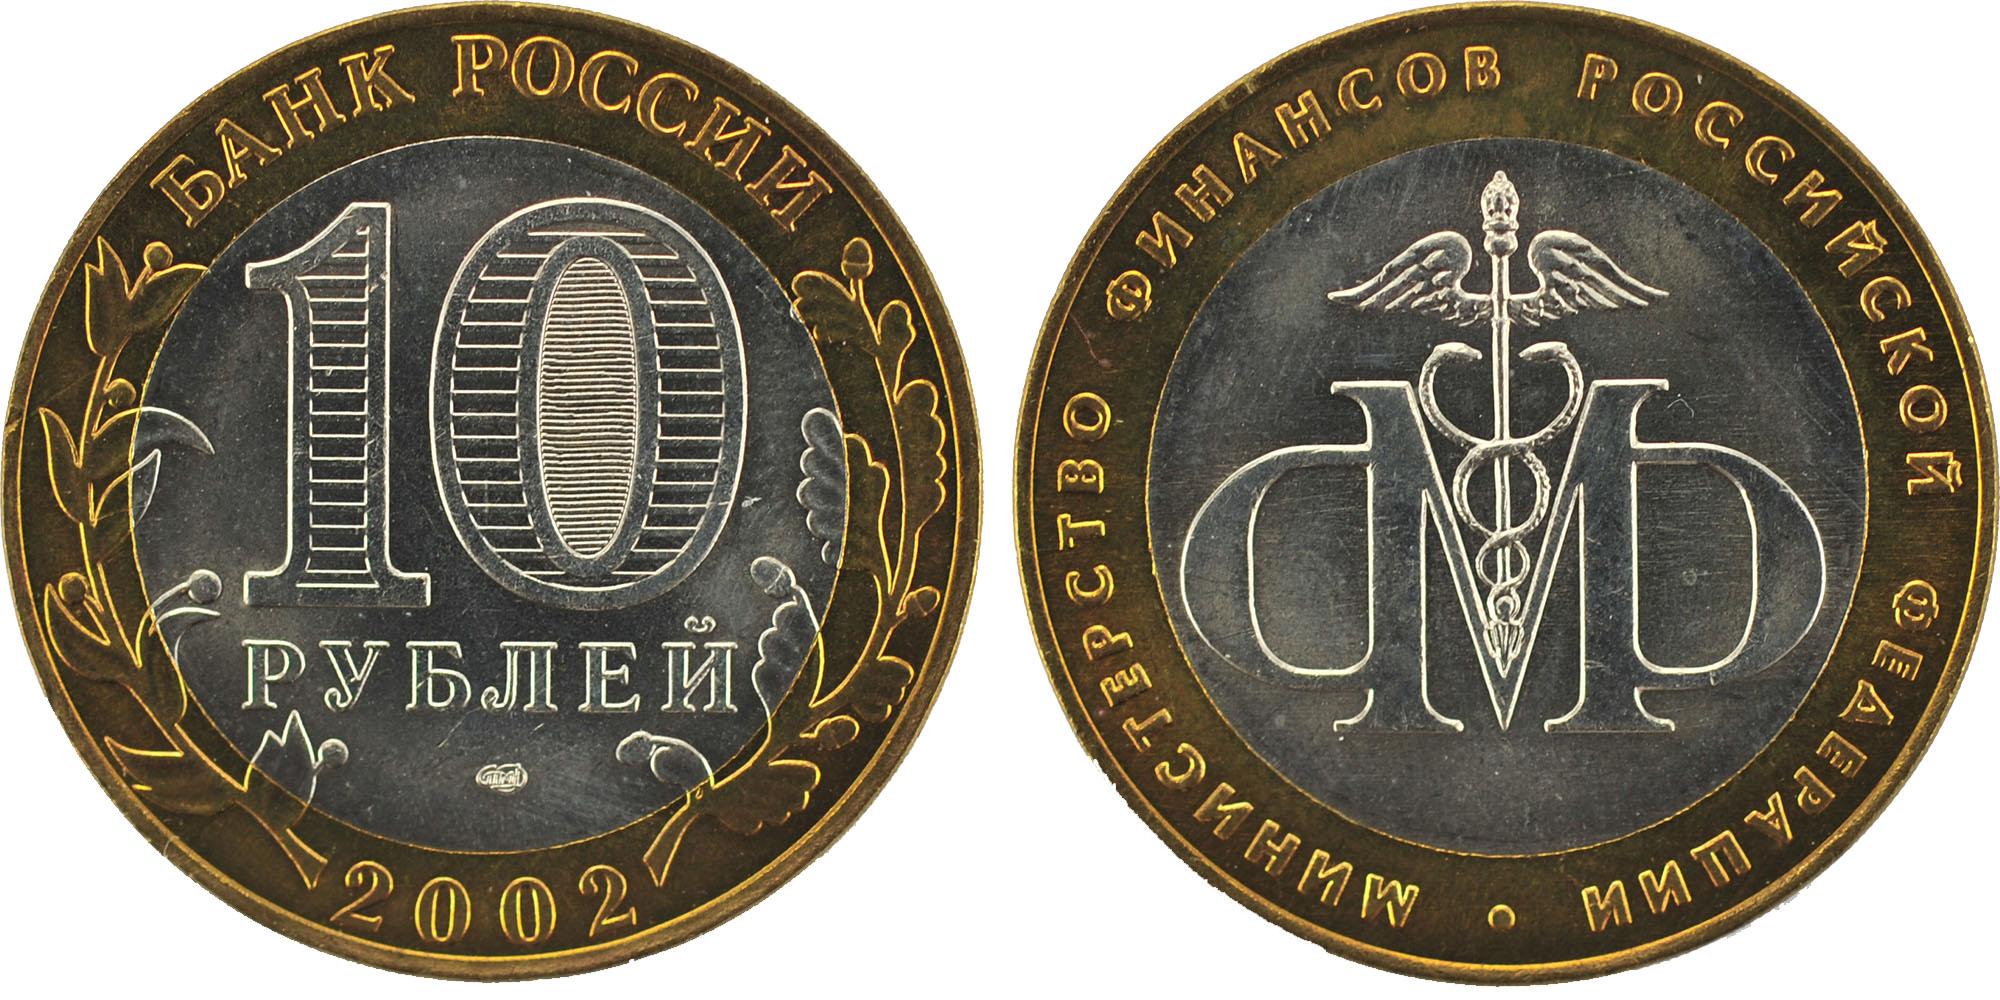 10 рублей 2002 года Министерство финансов Российской Федерации